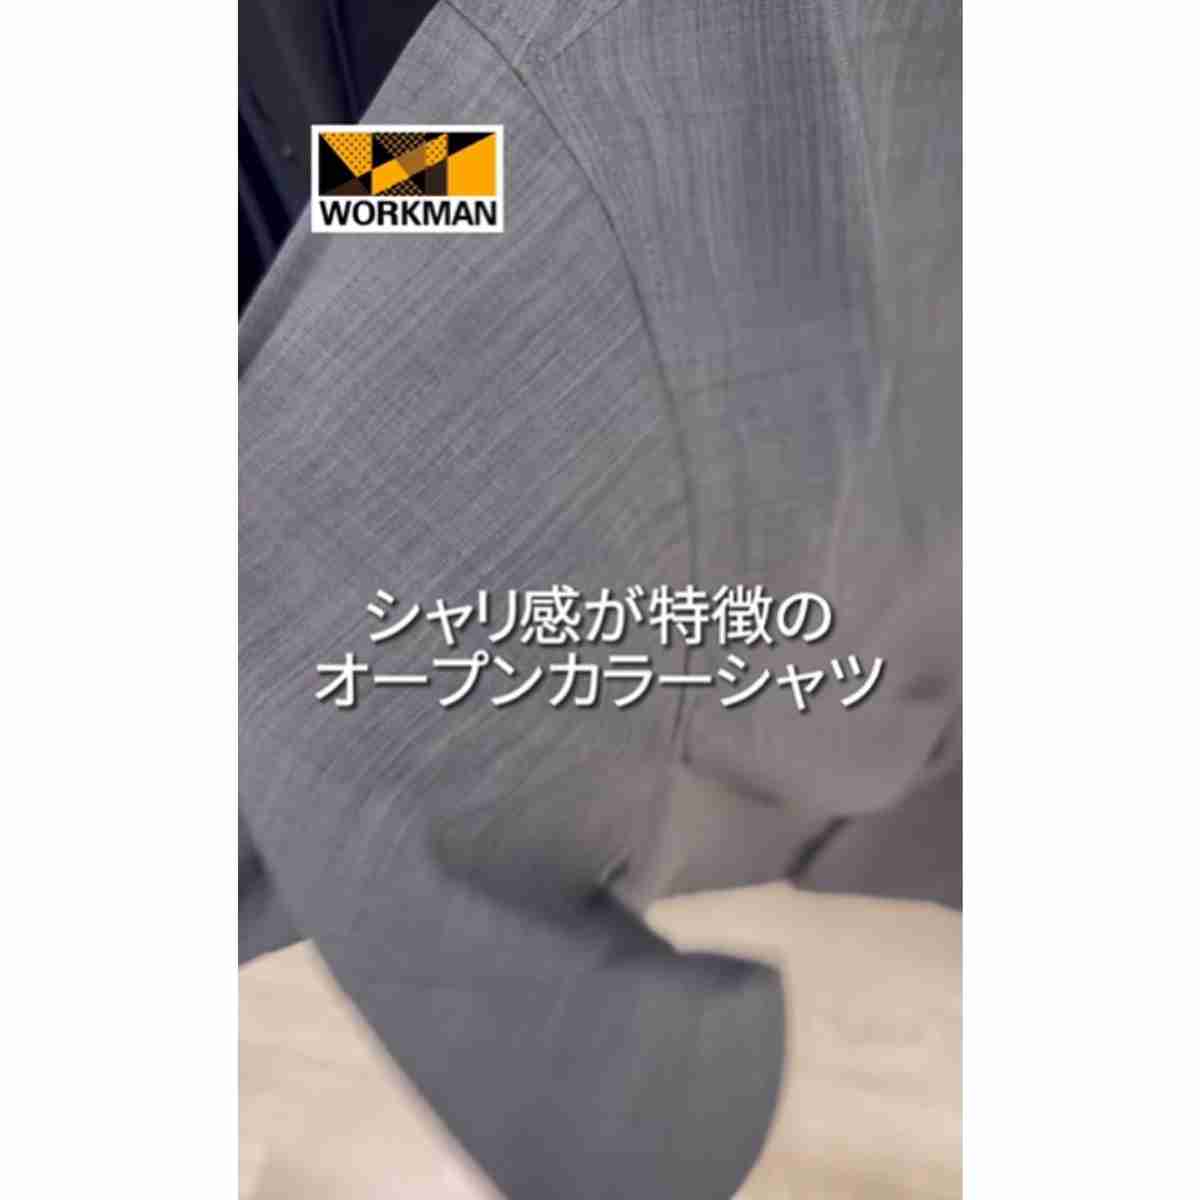 ワークマン「シャリテック(R)強撚糸オープンカラー半袖シャツ」はシャリ感が特徴